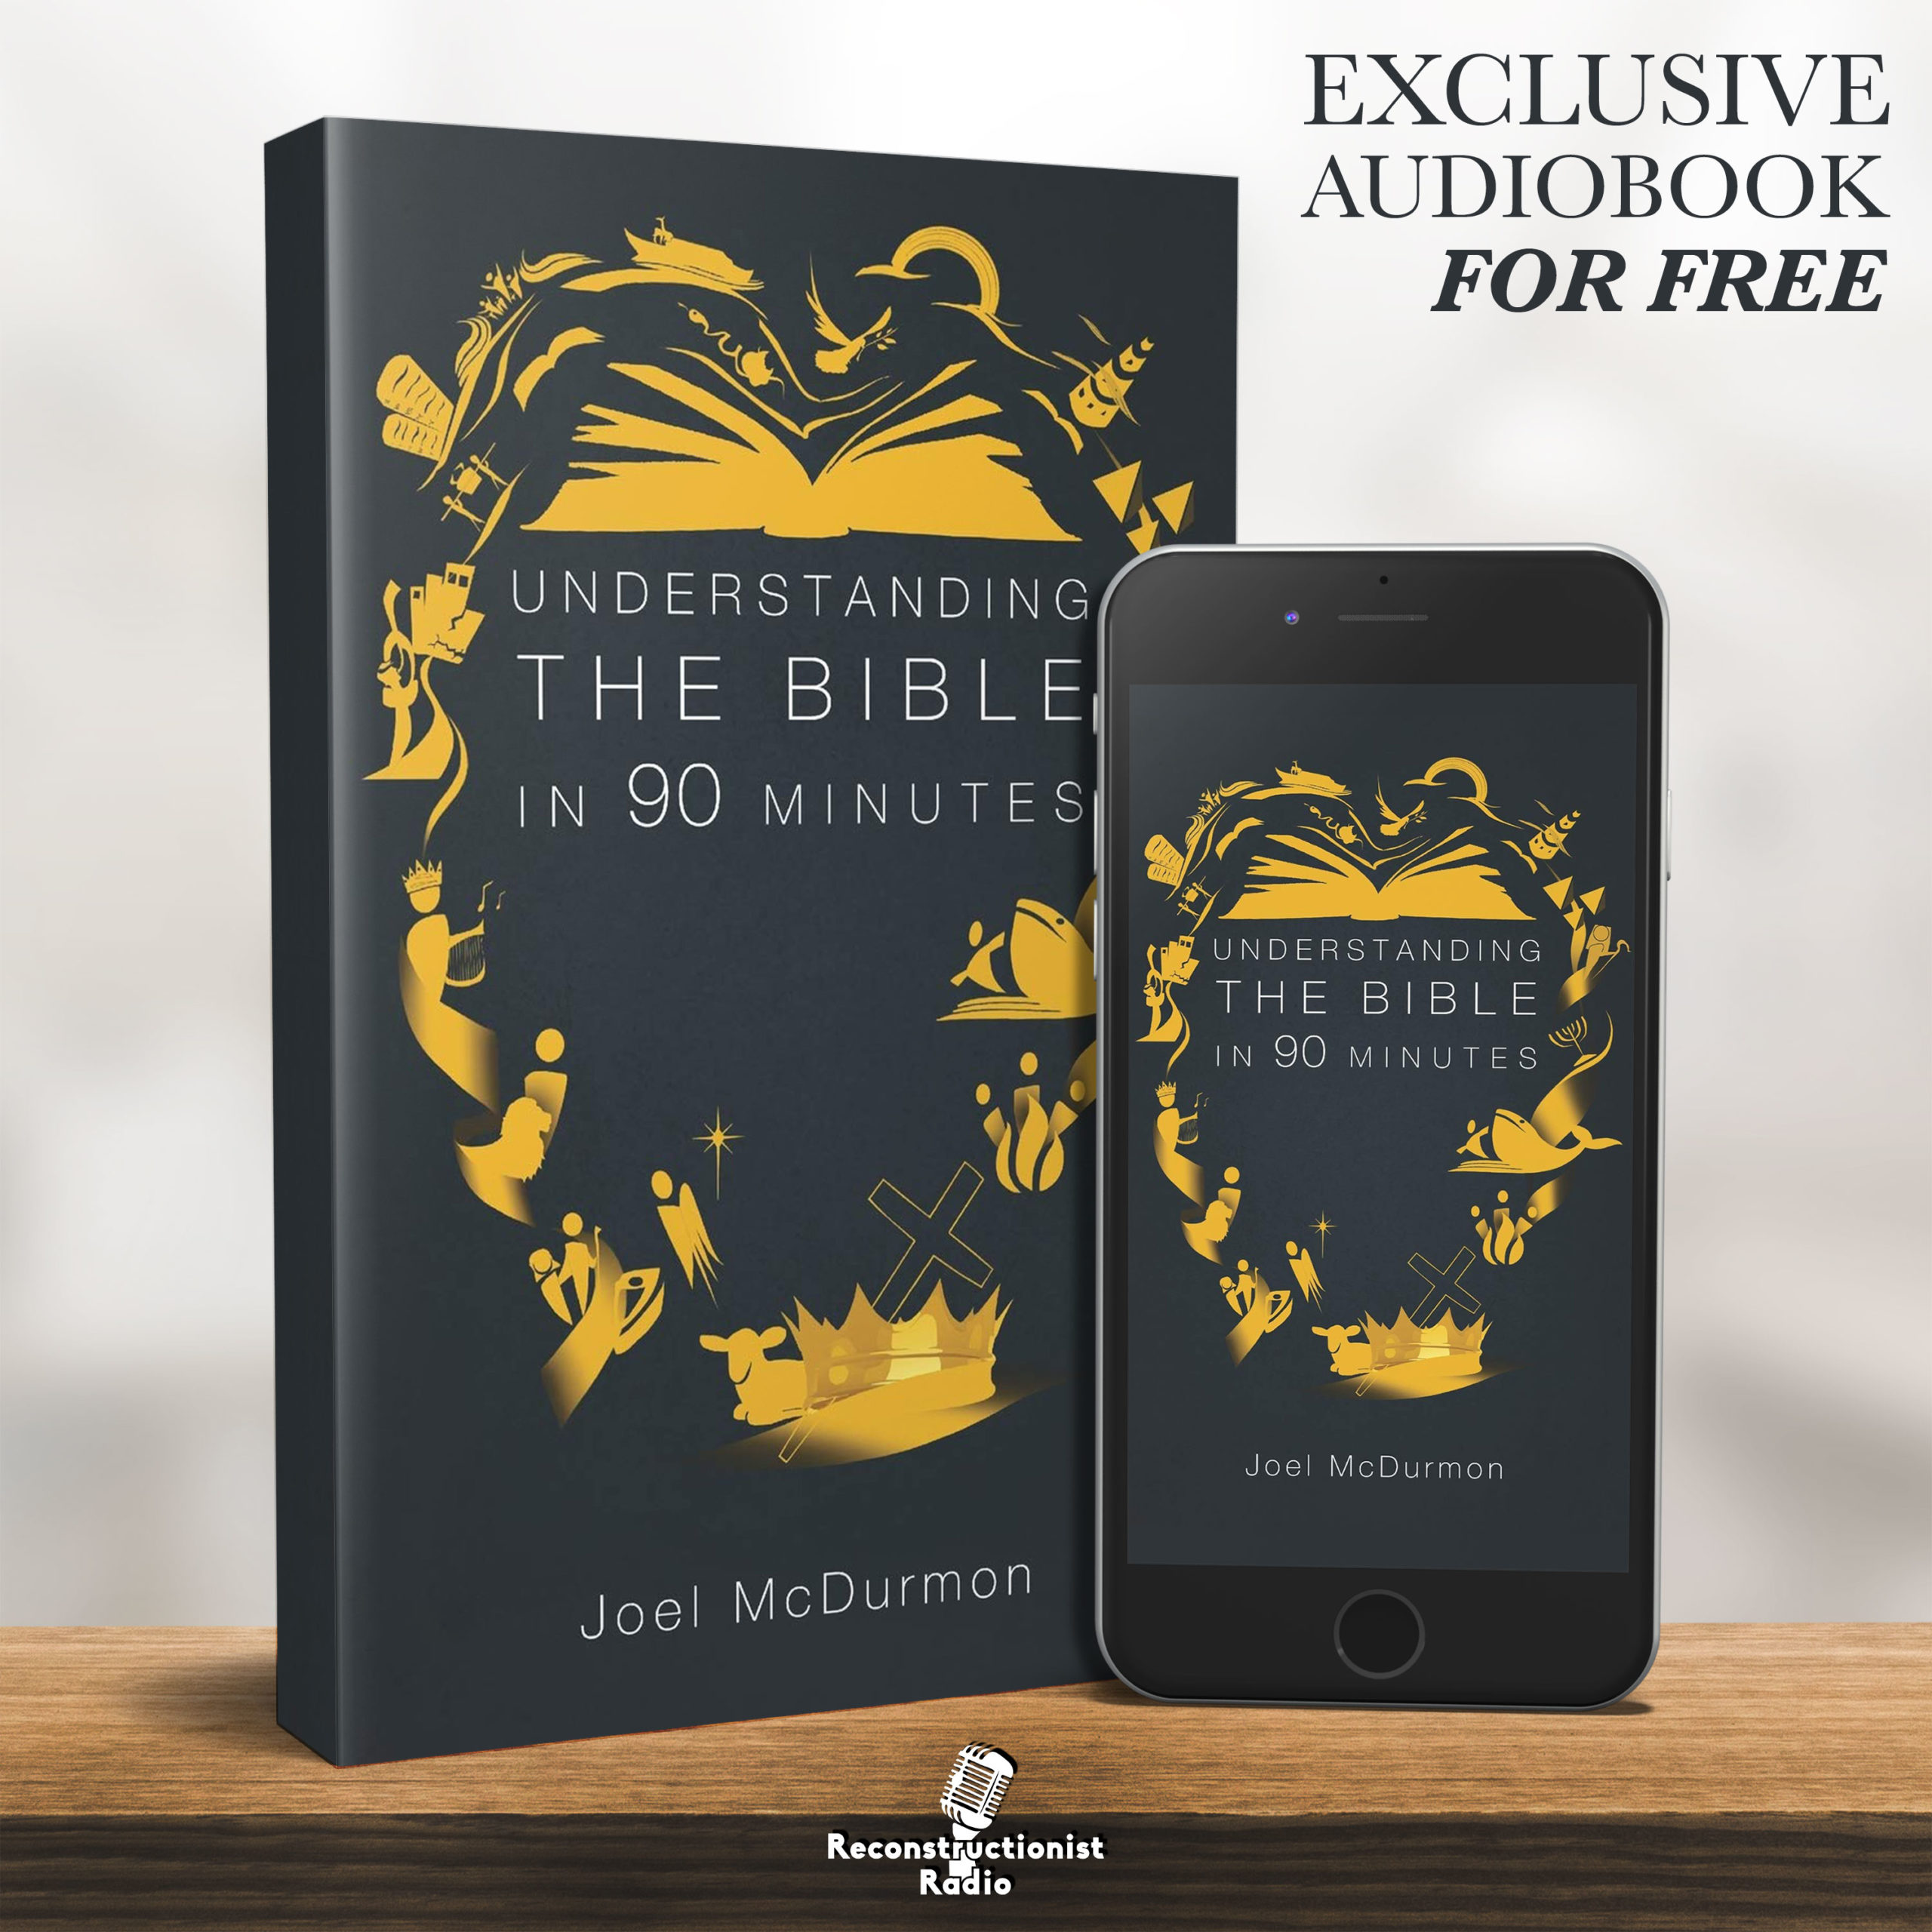 Understanding the Bible in 90 Minutes - Reconstructionist Radio (Audiobook)